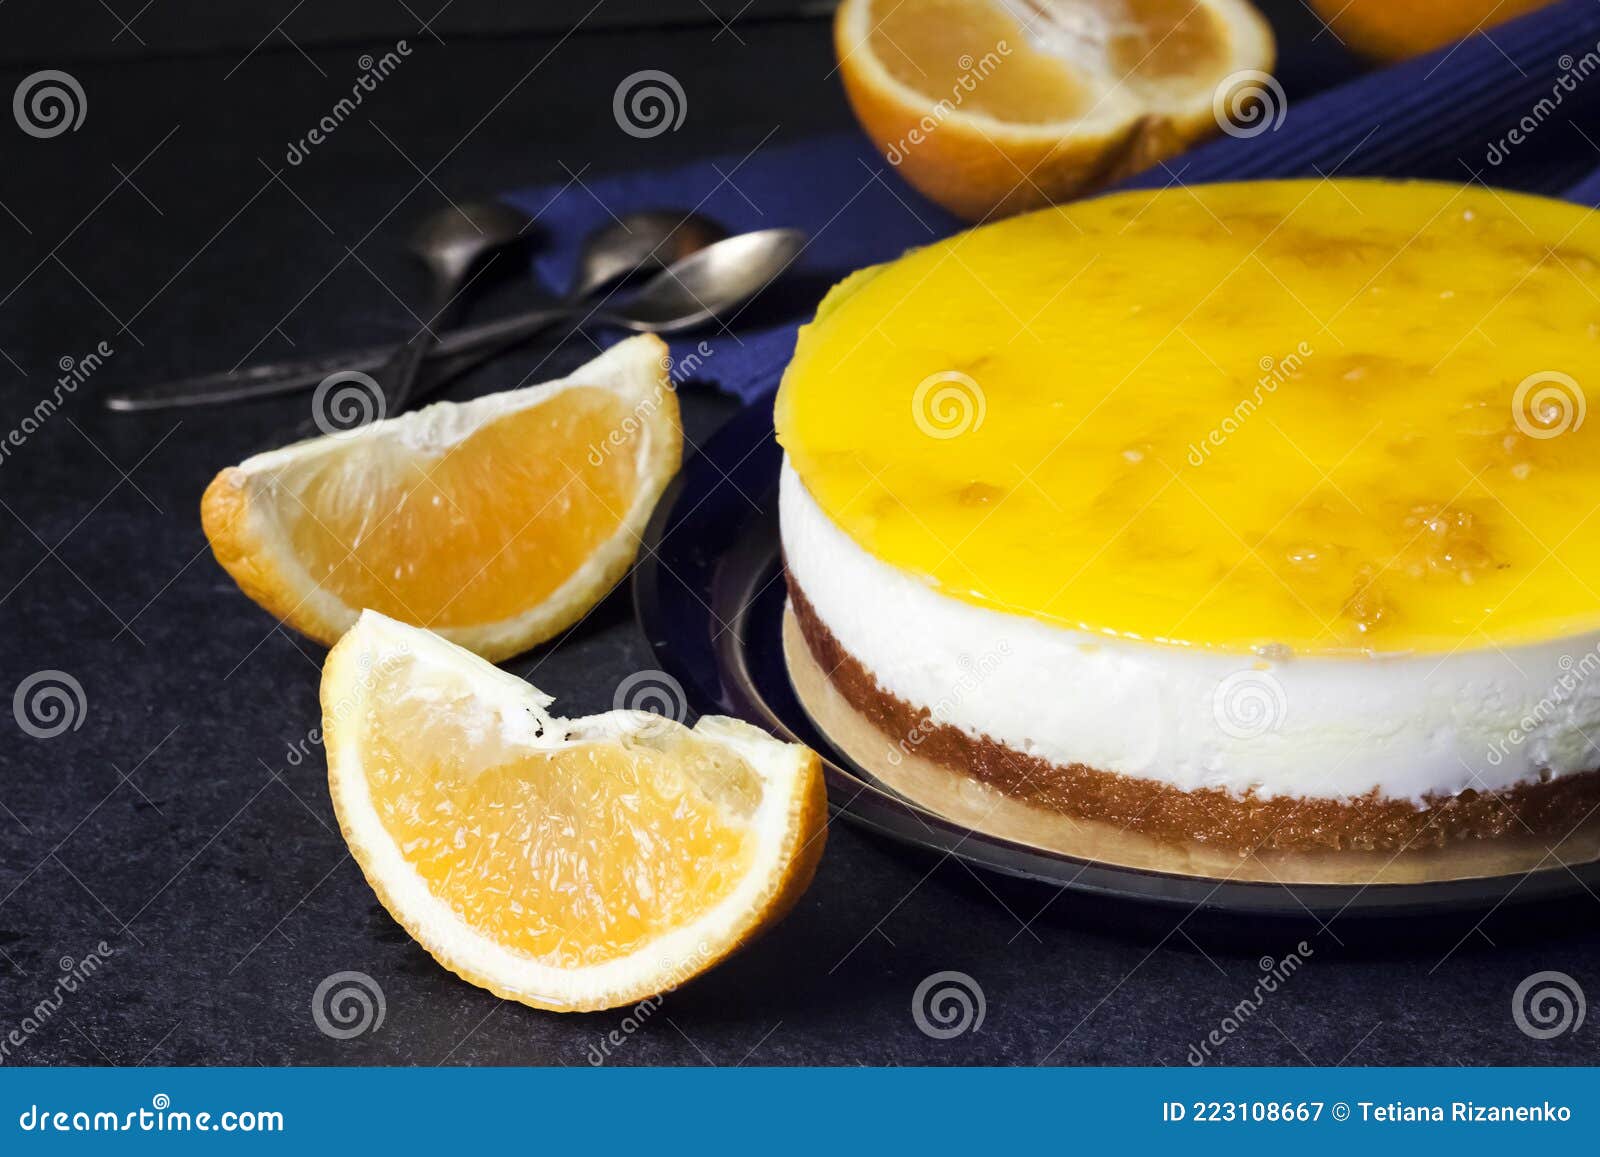 图片素材 : 橙子, 模式, 餐饮, 粉, 甜点, 蛋糕, 刨冰 4000x4957 - - 51324 - 素材中国, 高清壁纸 ...